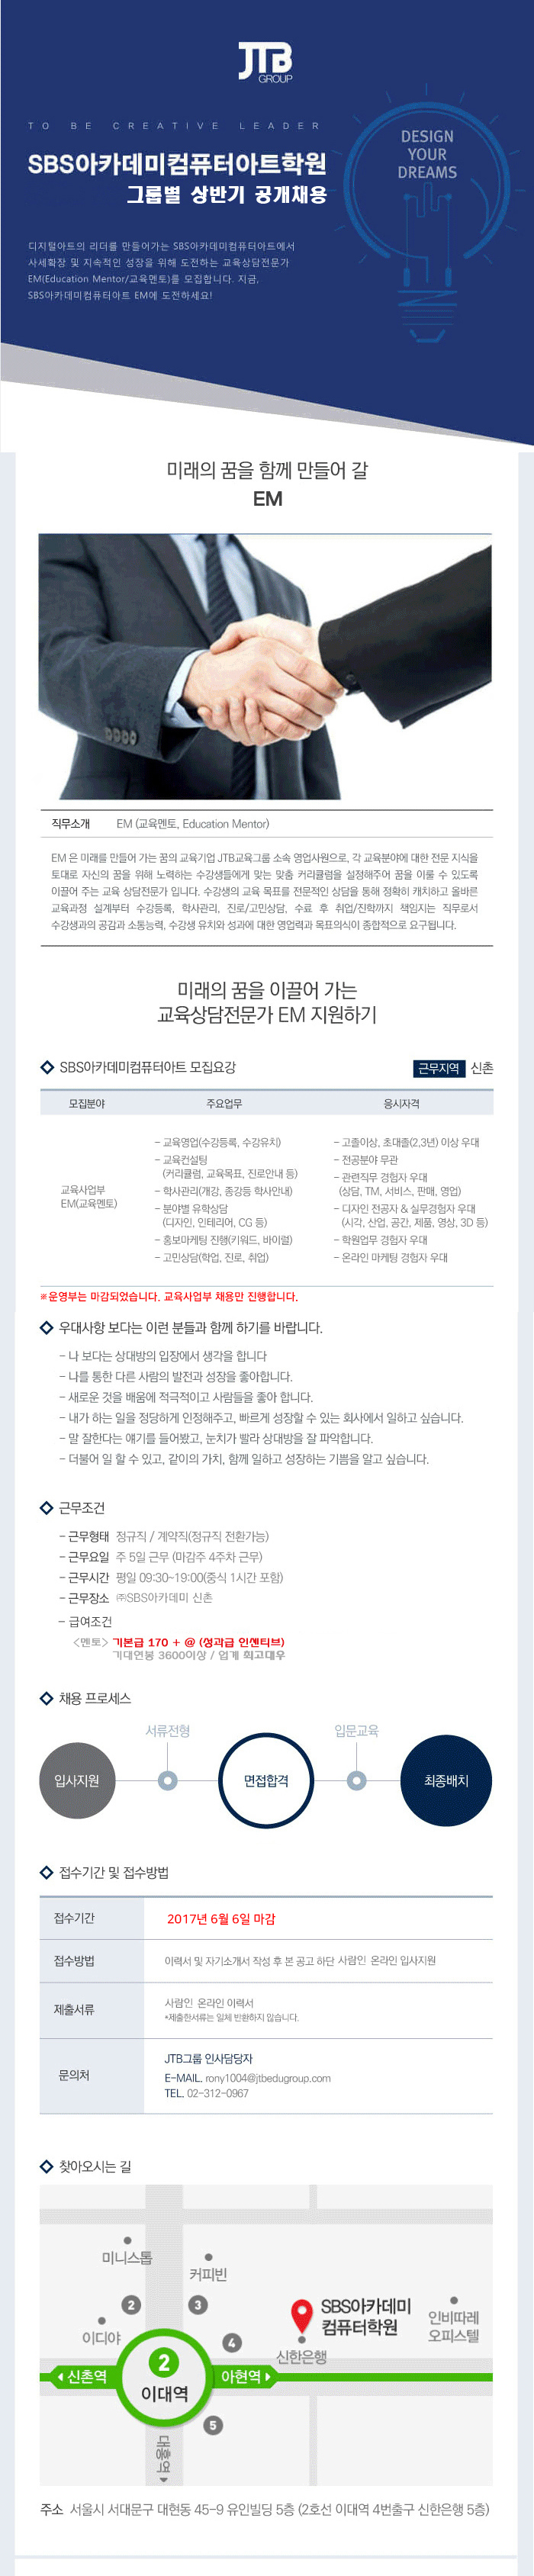 (주)SBS아카데미 본원 상반기 공개채용